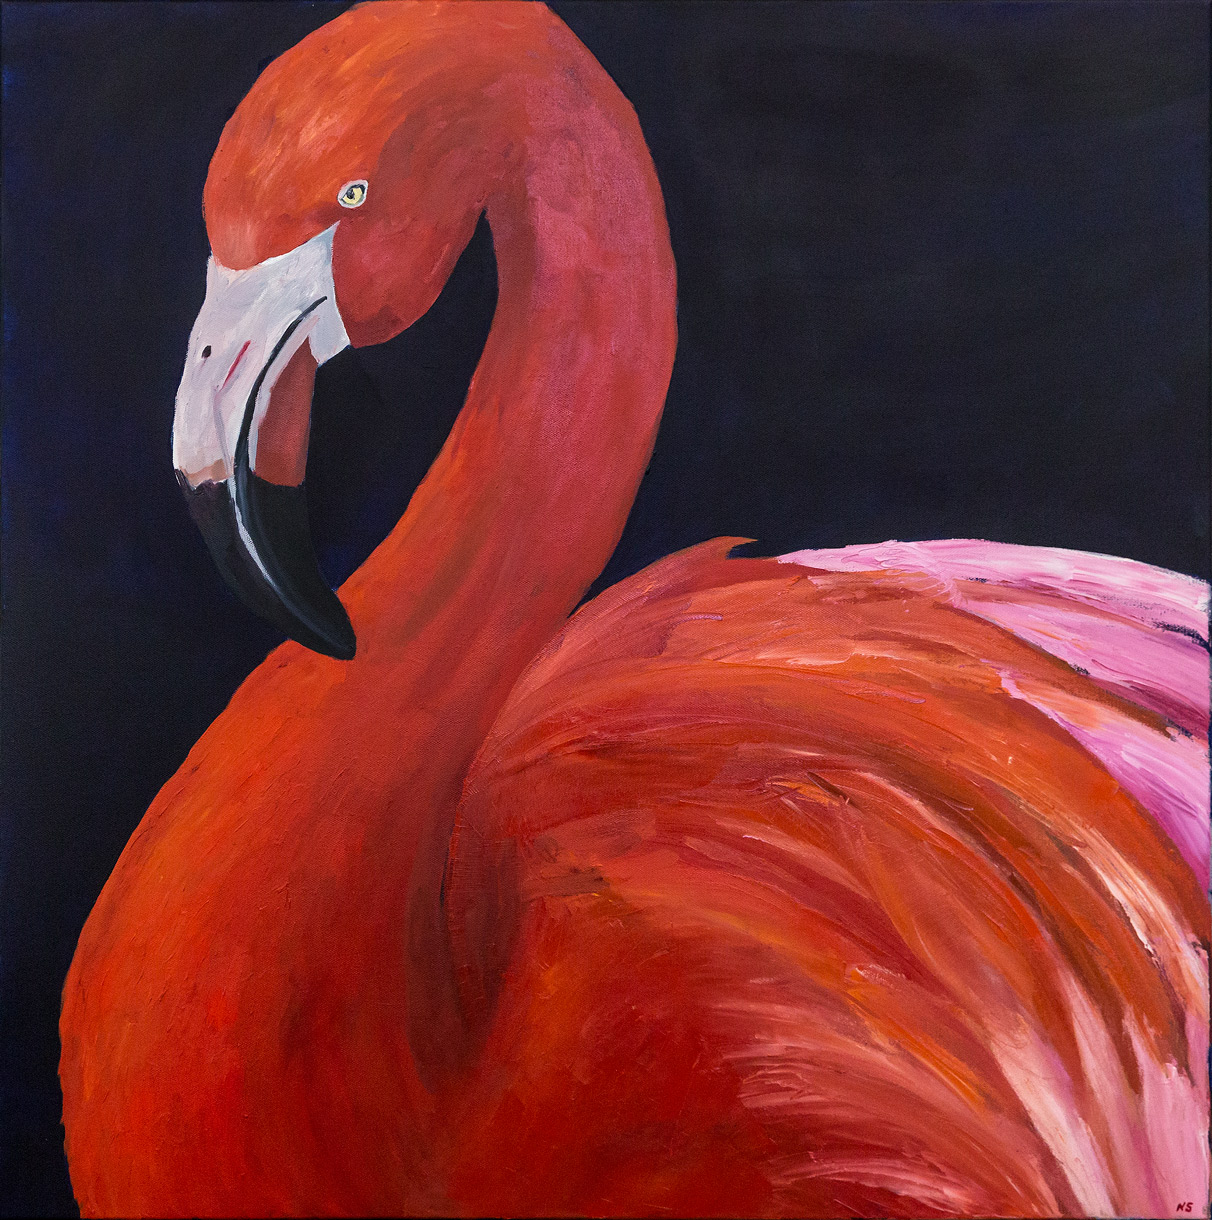 Square artwork of a flamingo on dark blue